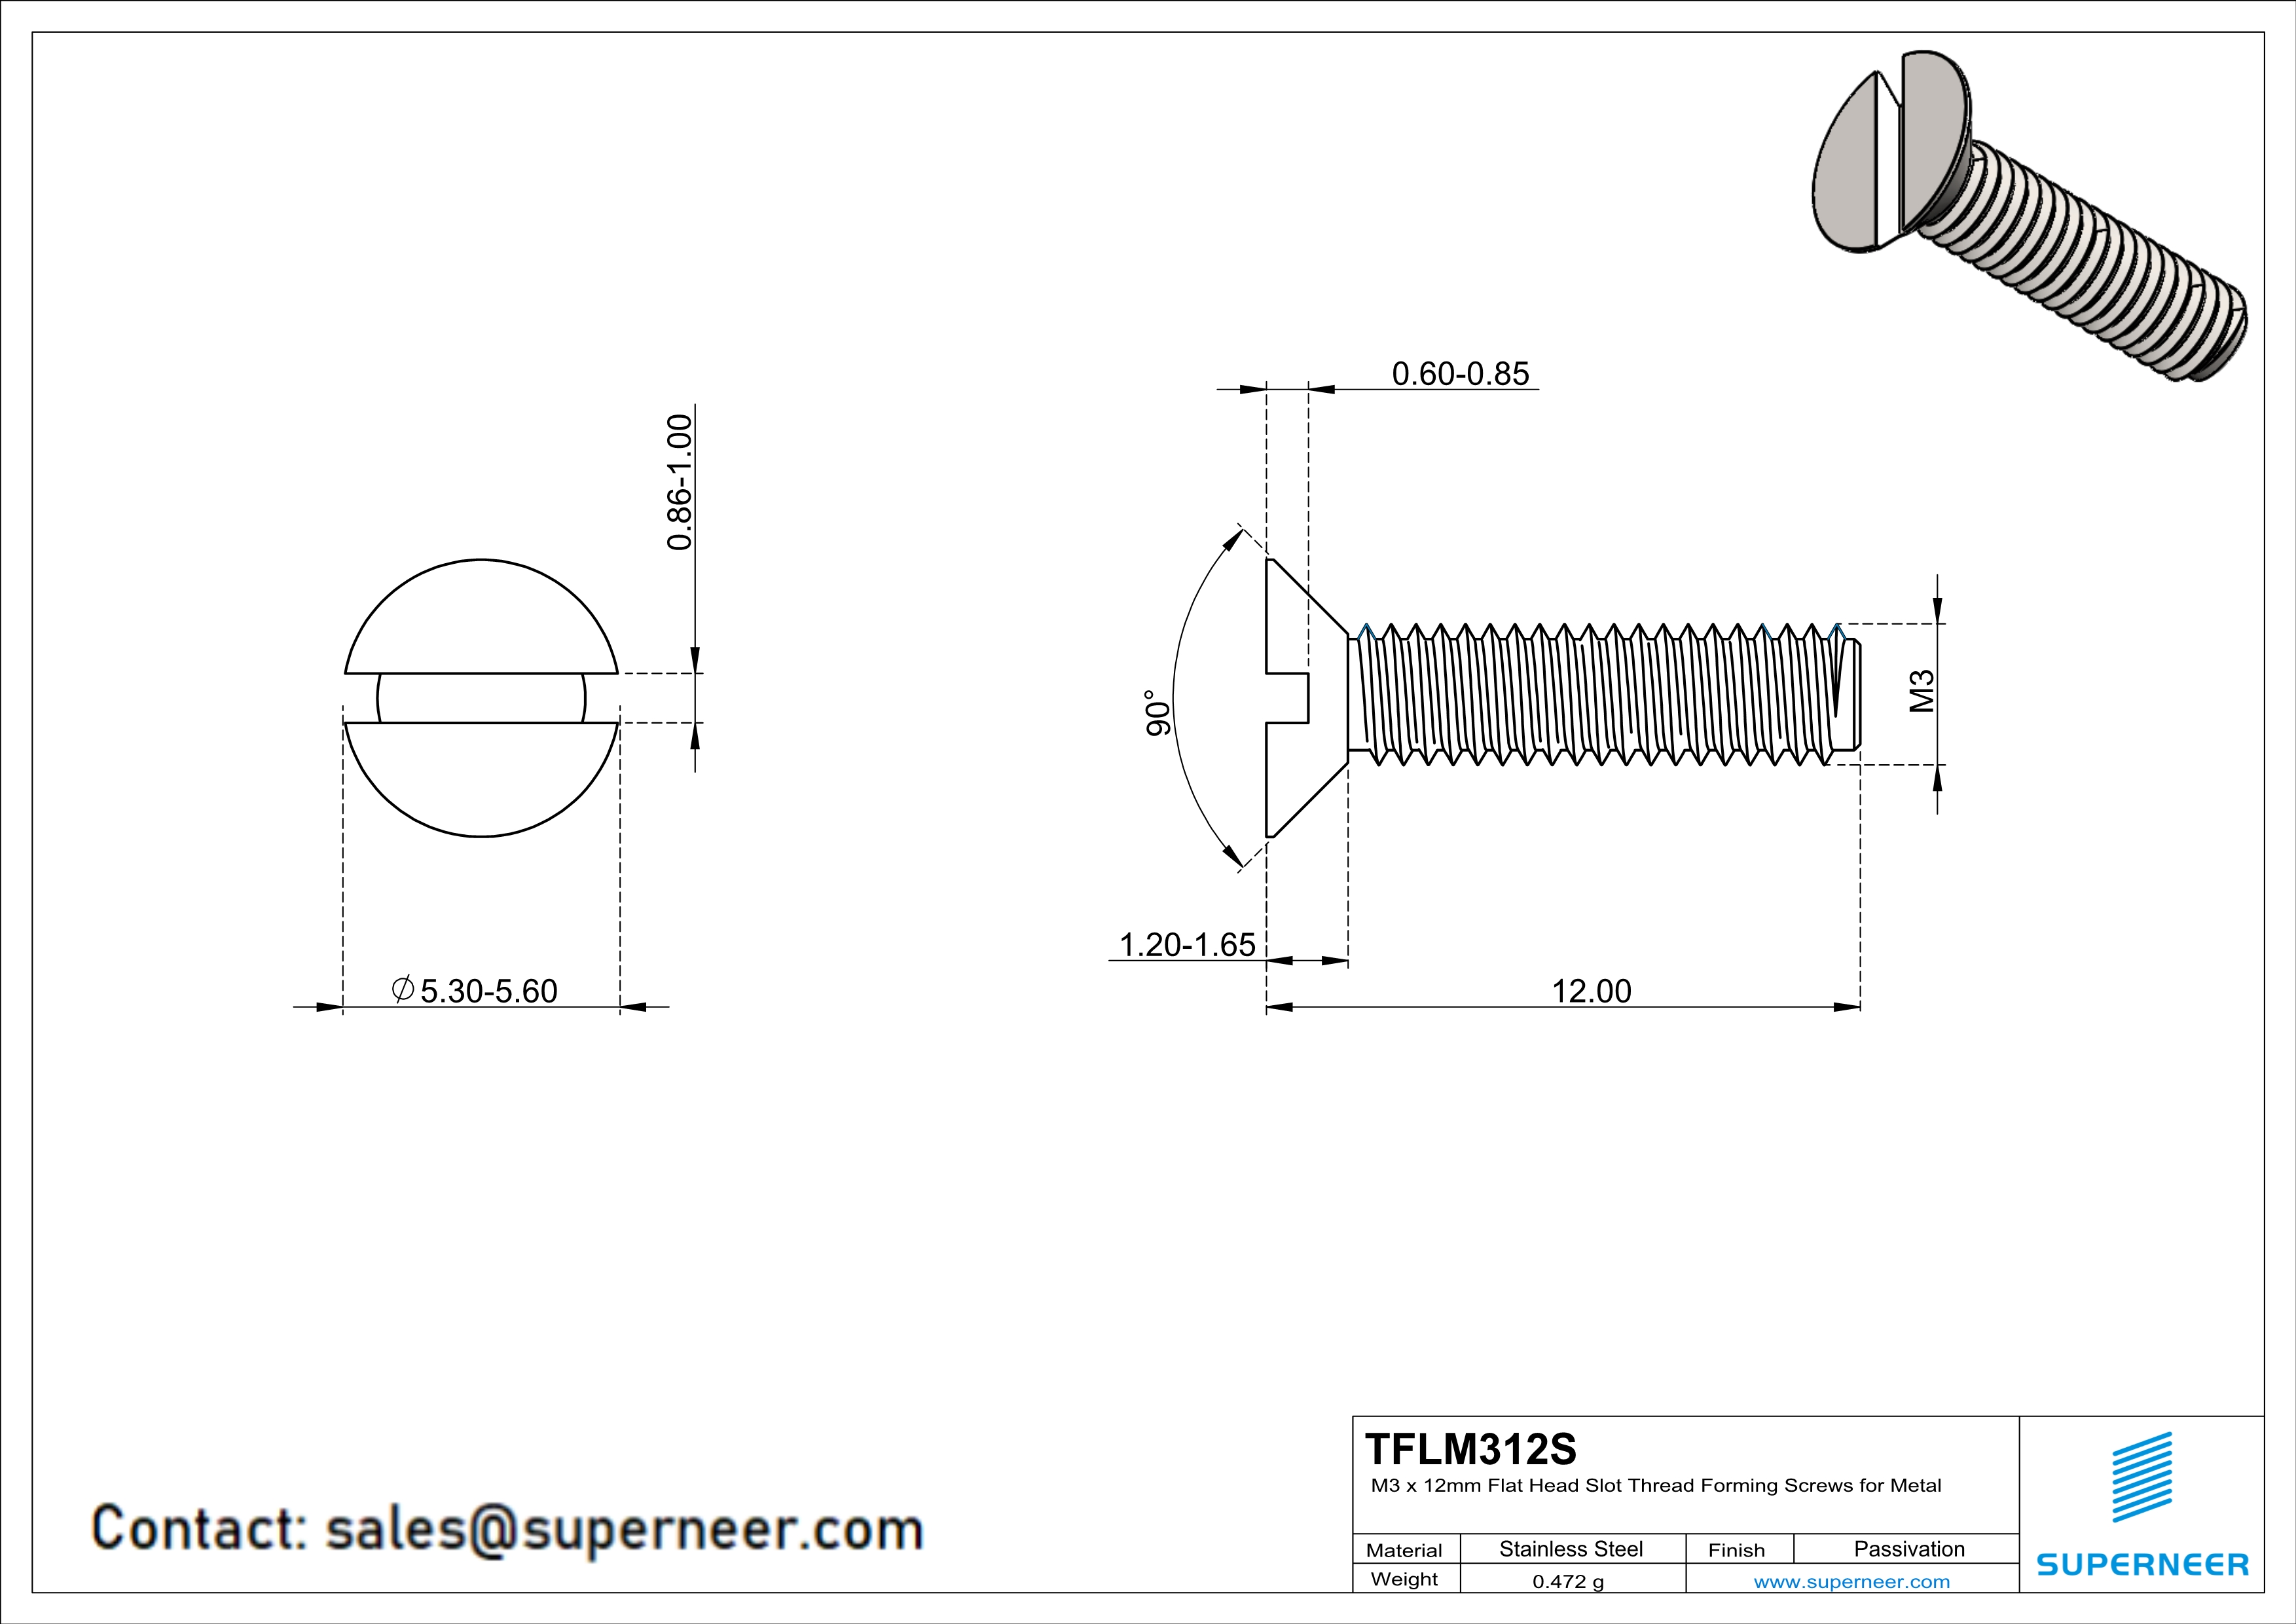 M3 × 12mm Flat Head Slot Thread Forming Screws for Metal SUS304 Stainless Steel Inox